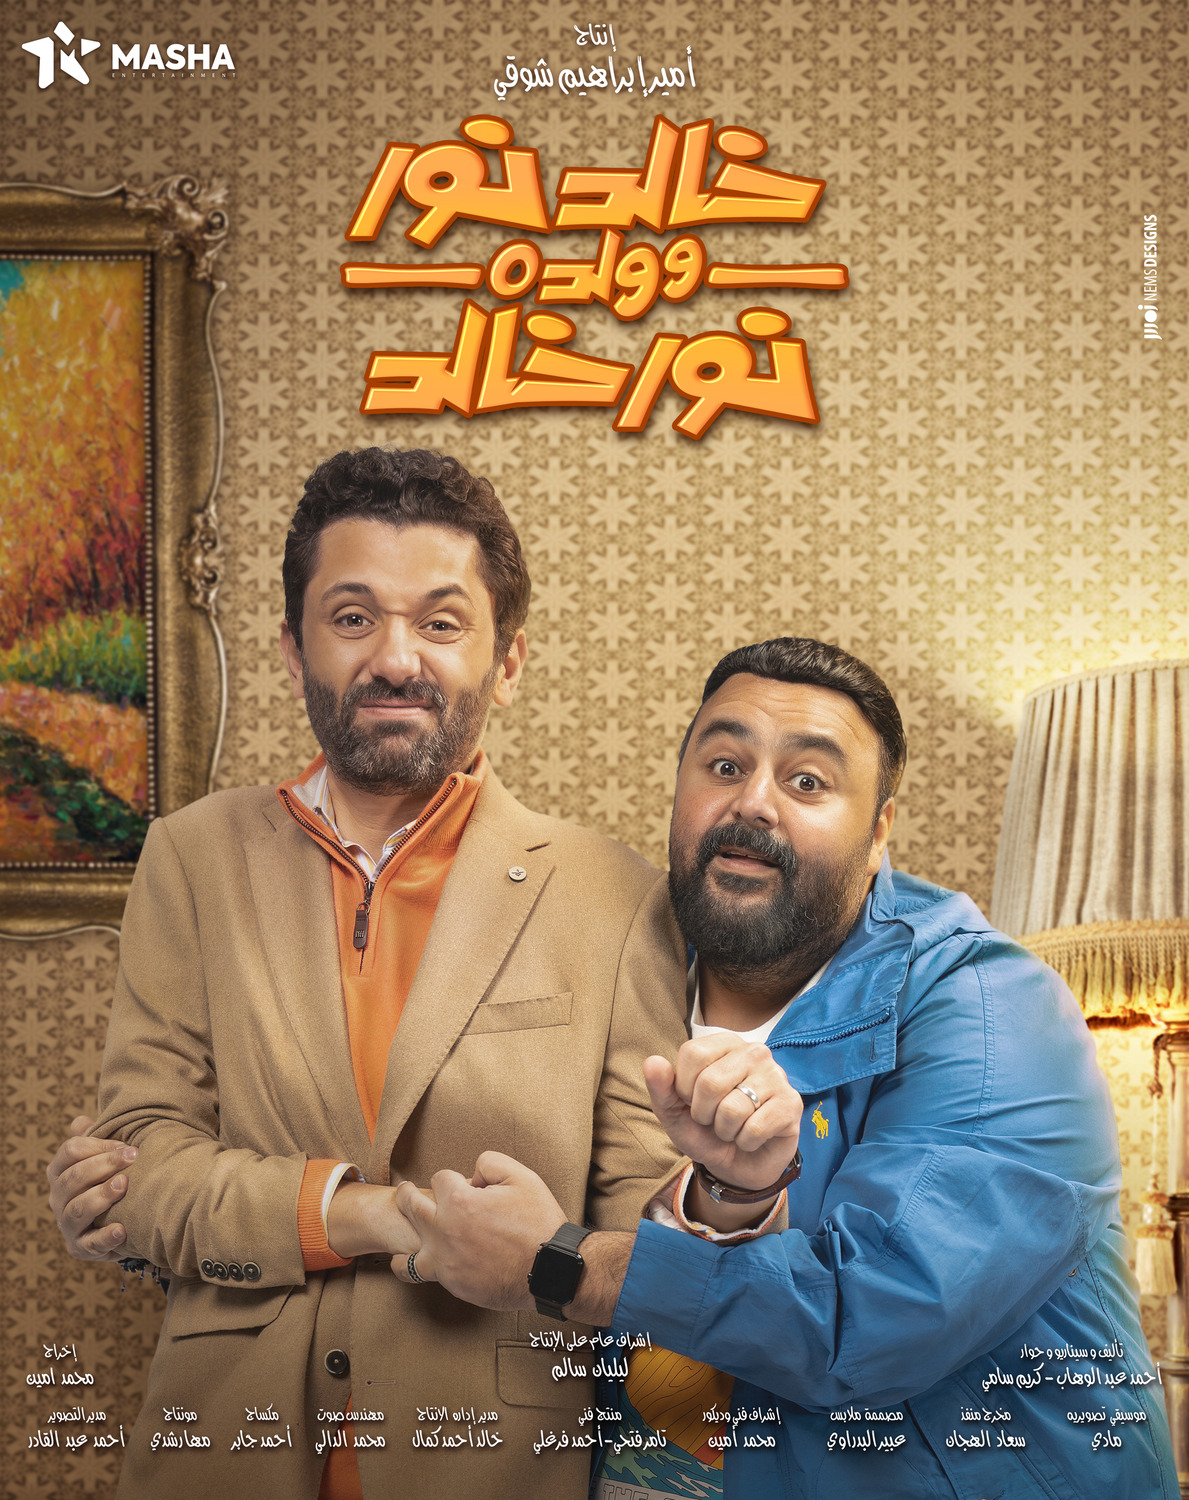 Extra Large TV Poster Image for Khaled Noor W Waldo Noor Khaled (#7 of 13)